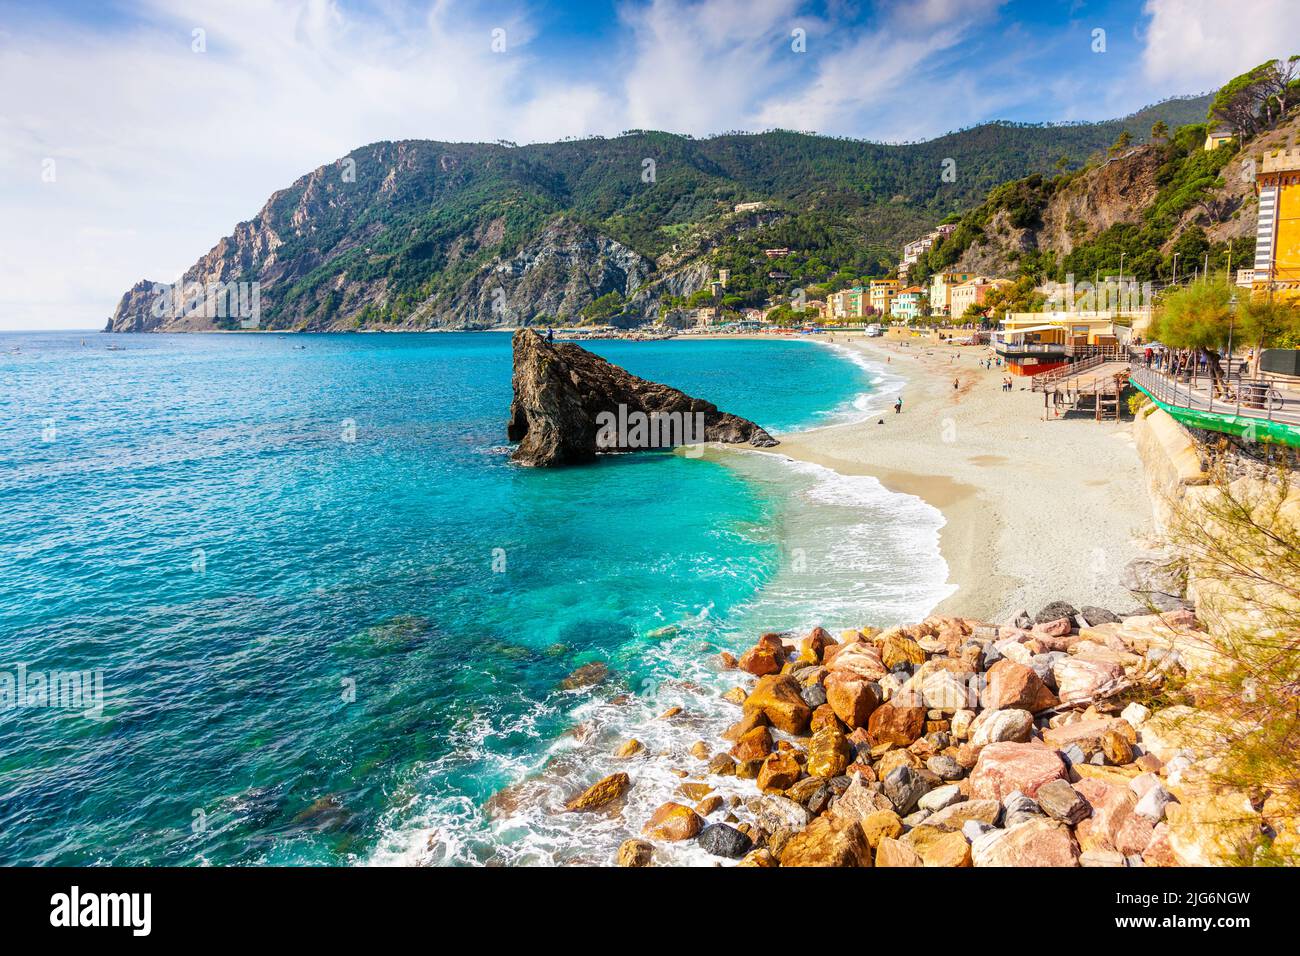 View of the beach and sea in Monterosso Al Mare, Cinque Terre, La Spezia, Italy Stock Photo